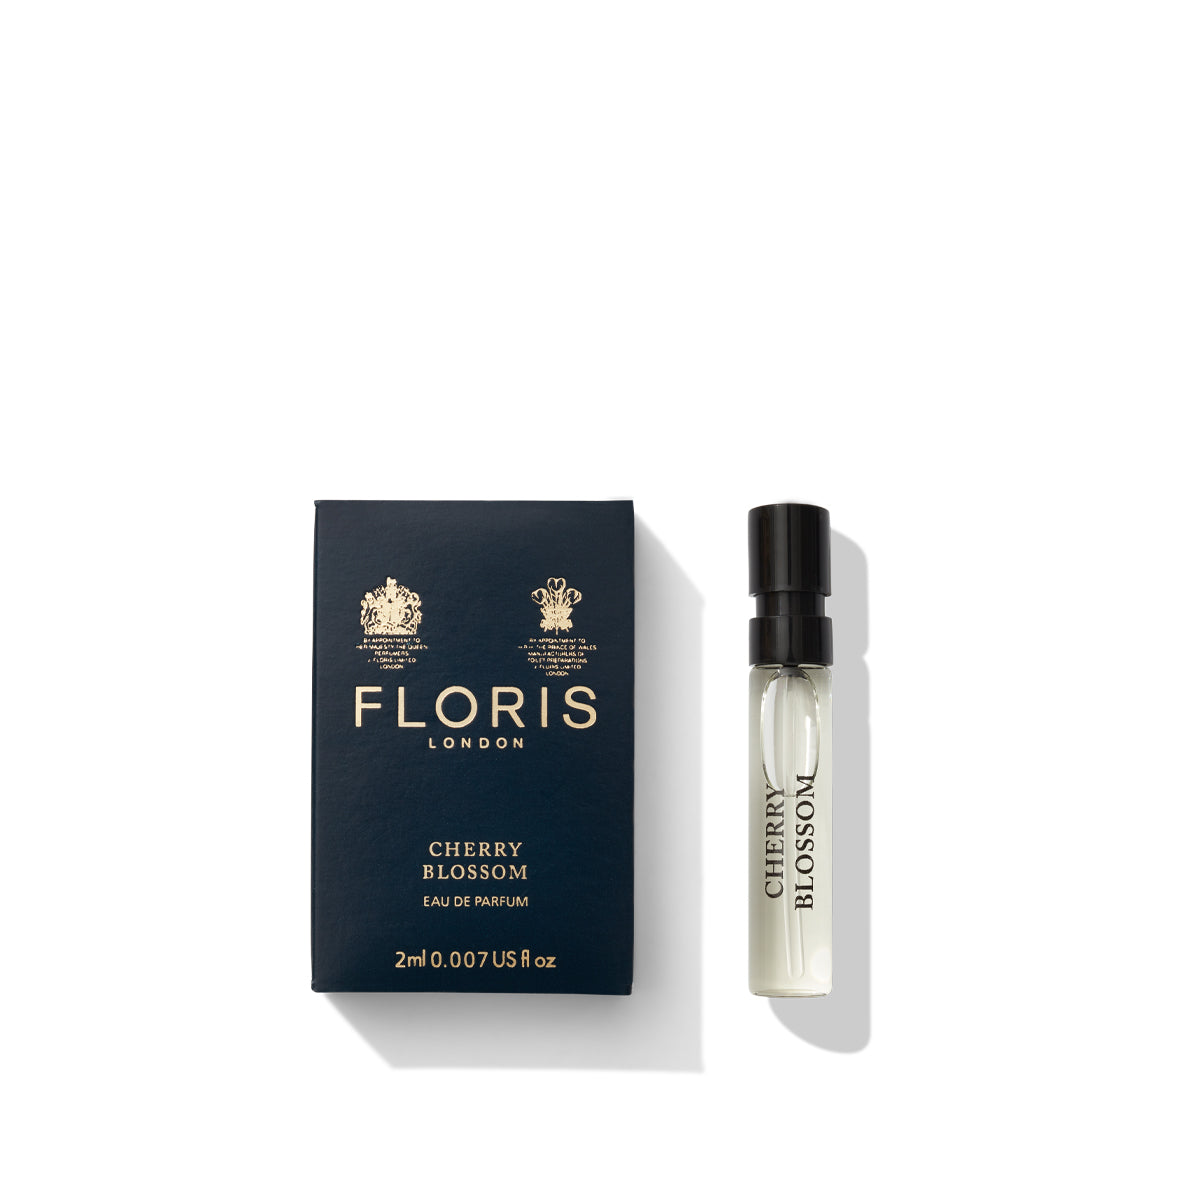 Floris 2ml vial of Cherry Blossom eau de parfum